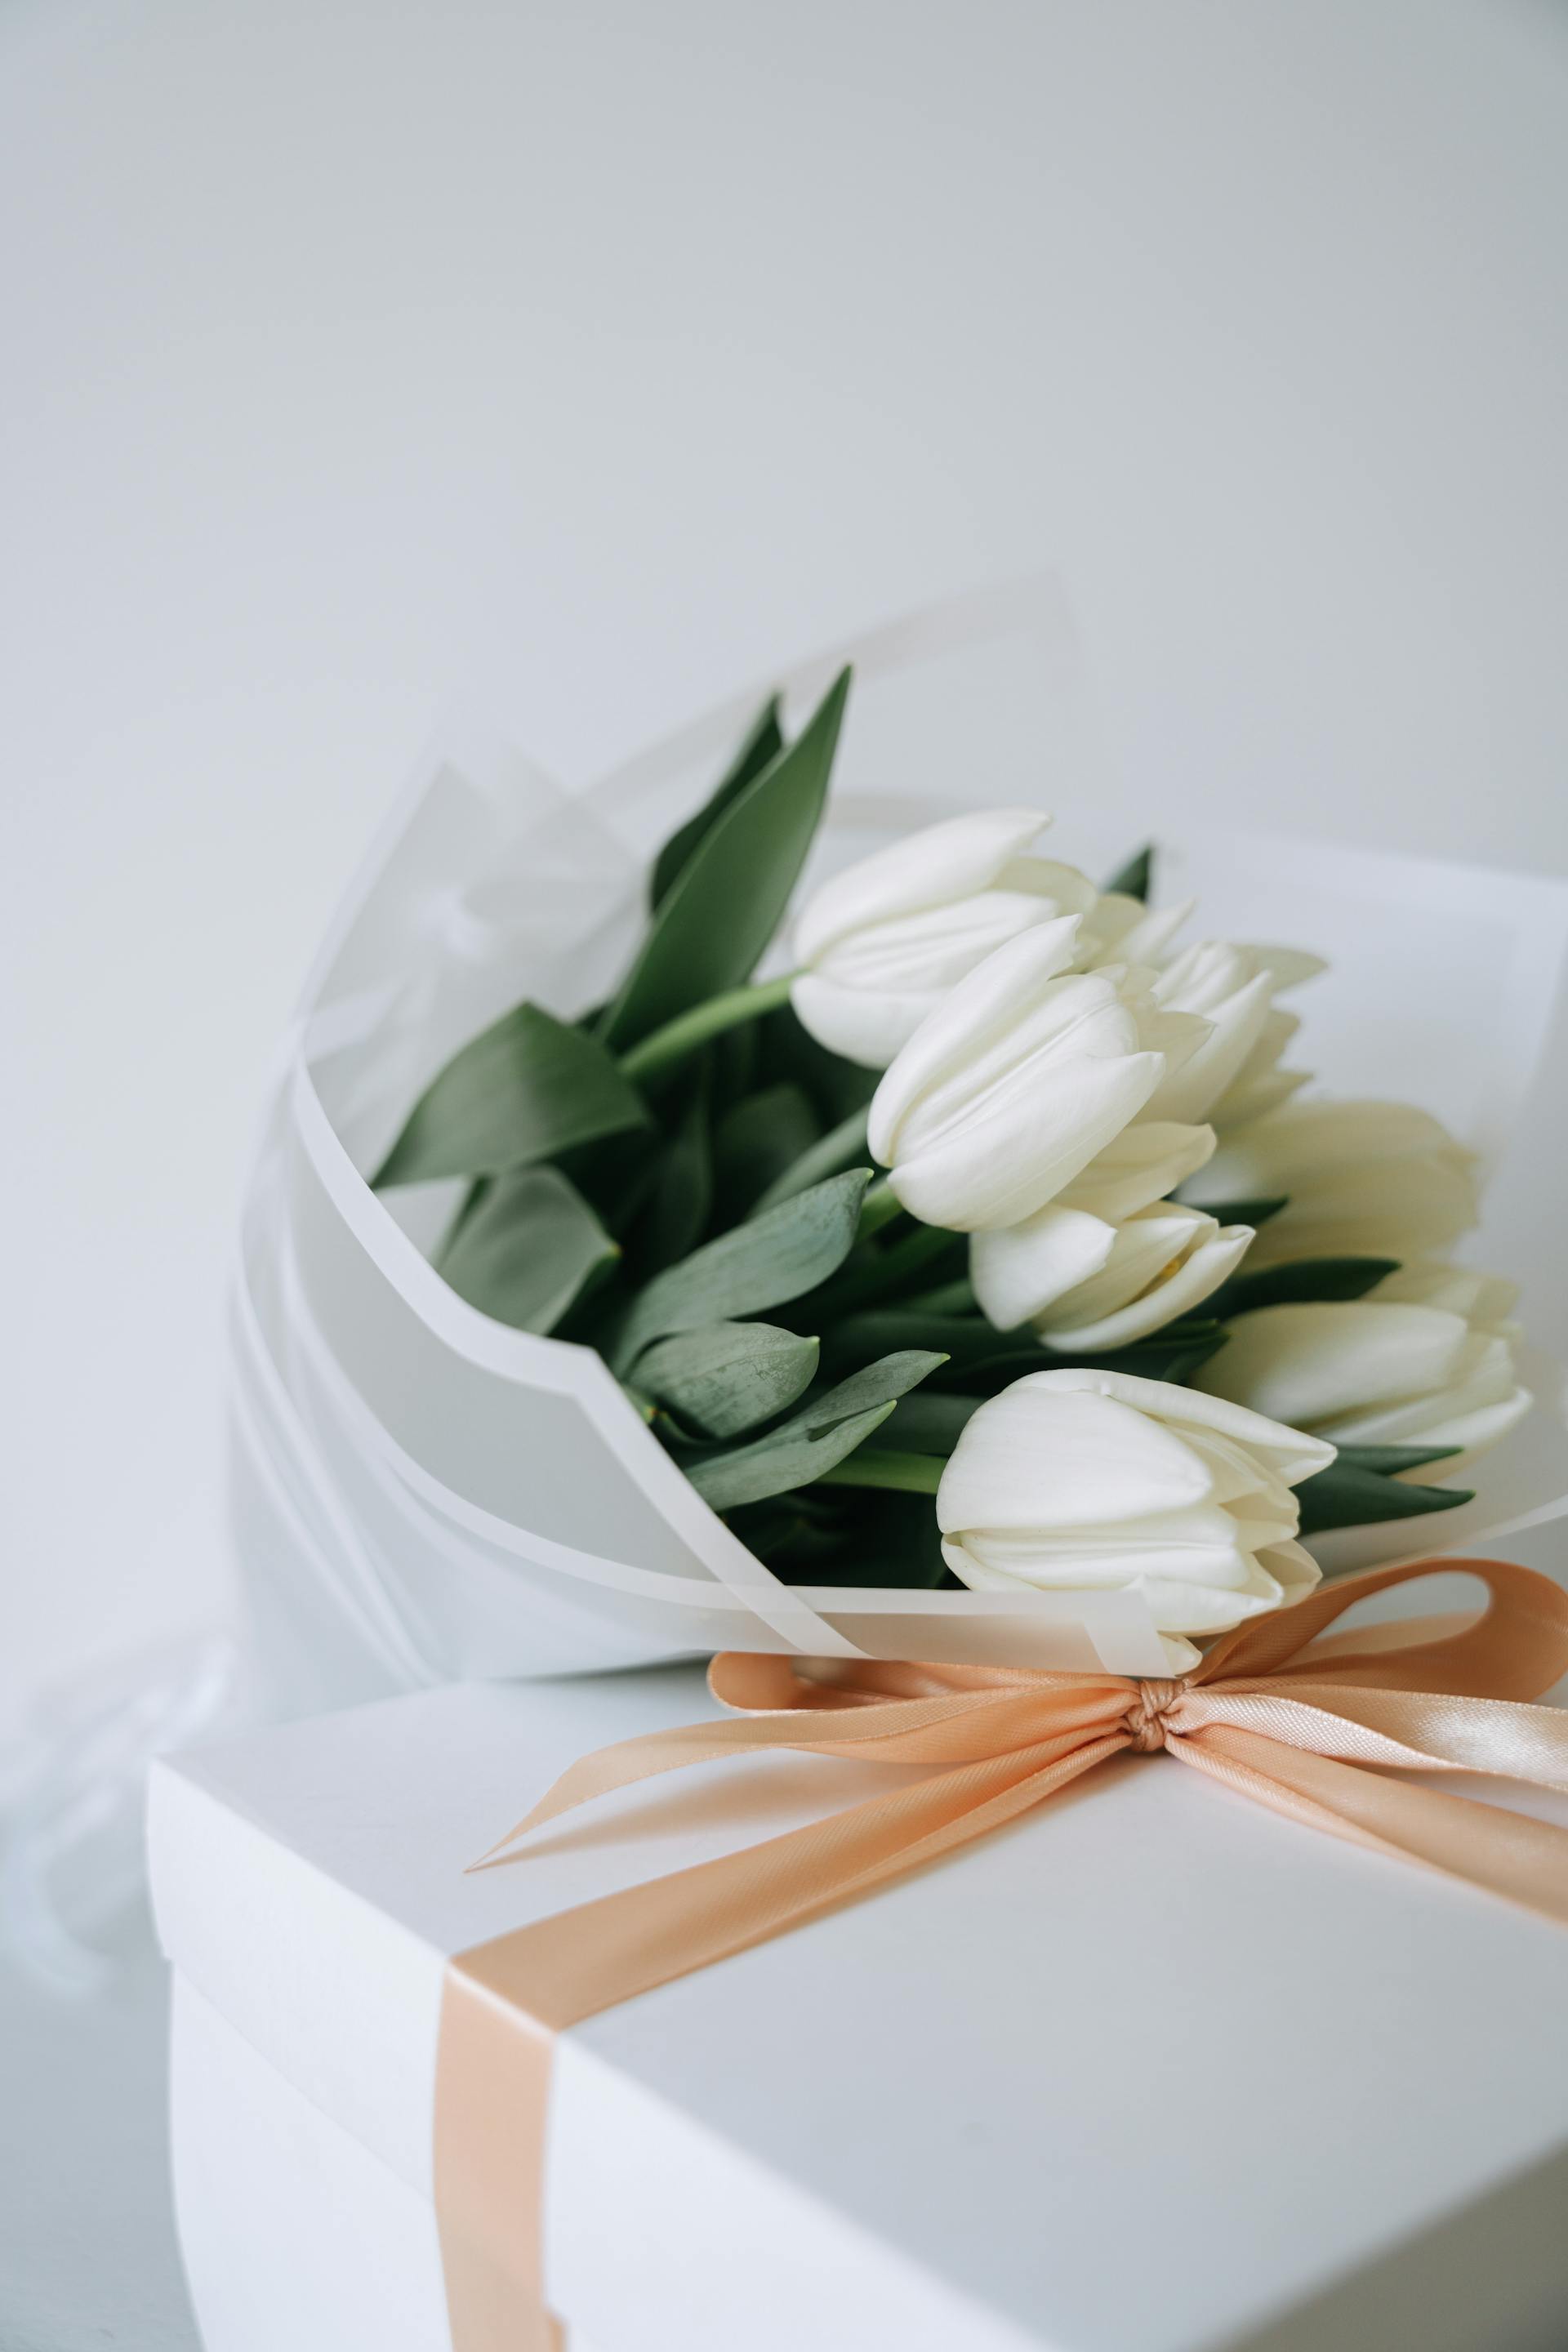 Un bouquet de tulipes blanches et un paquet cadeau | Source : Pexels